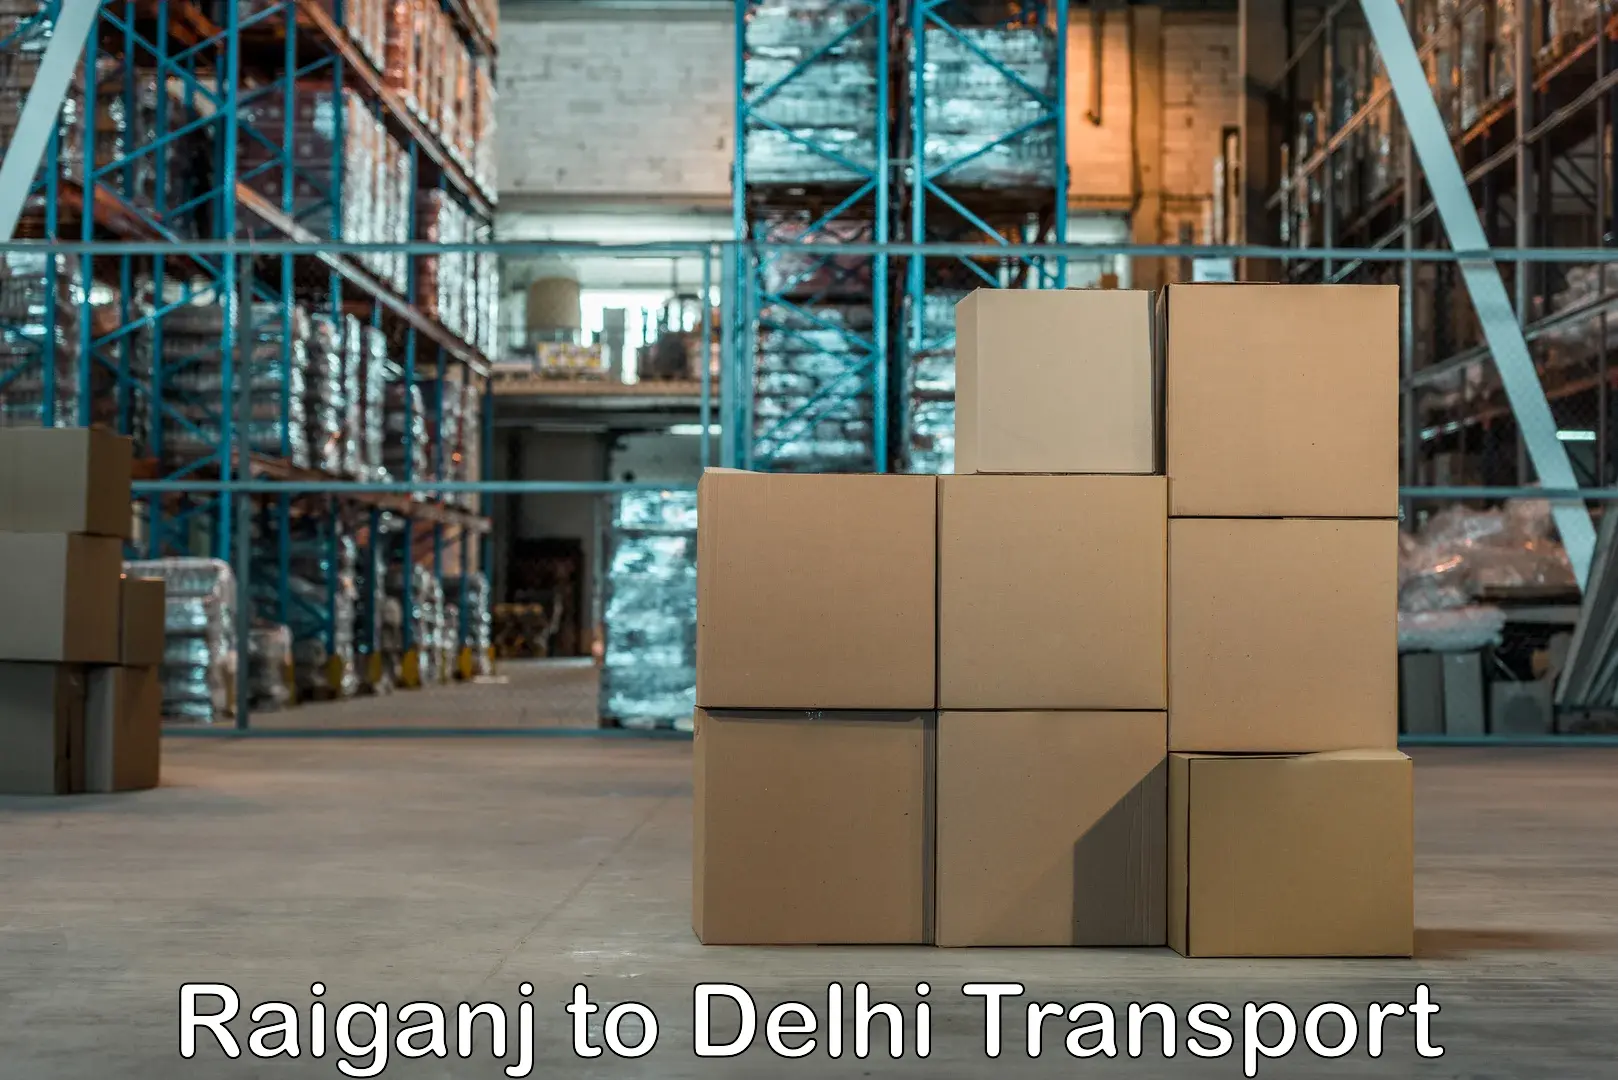 Pick up transport service Raiganj to Delhi